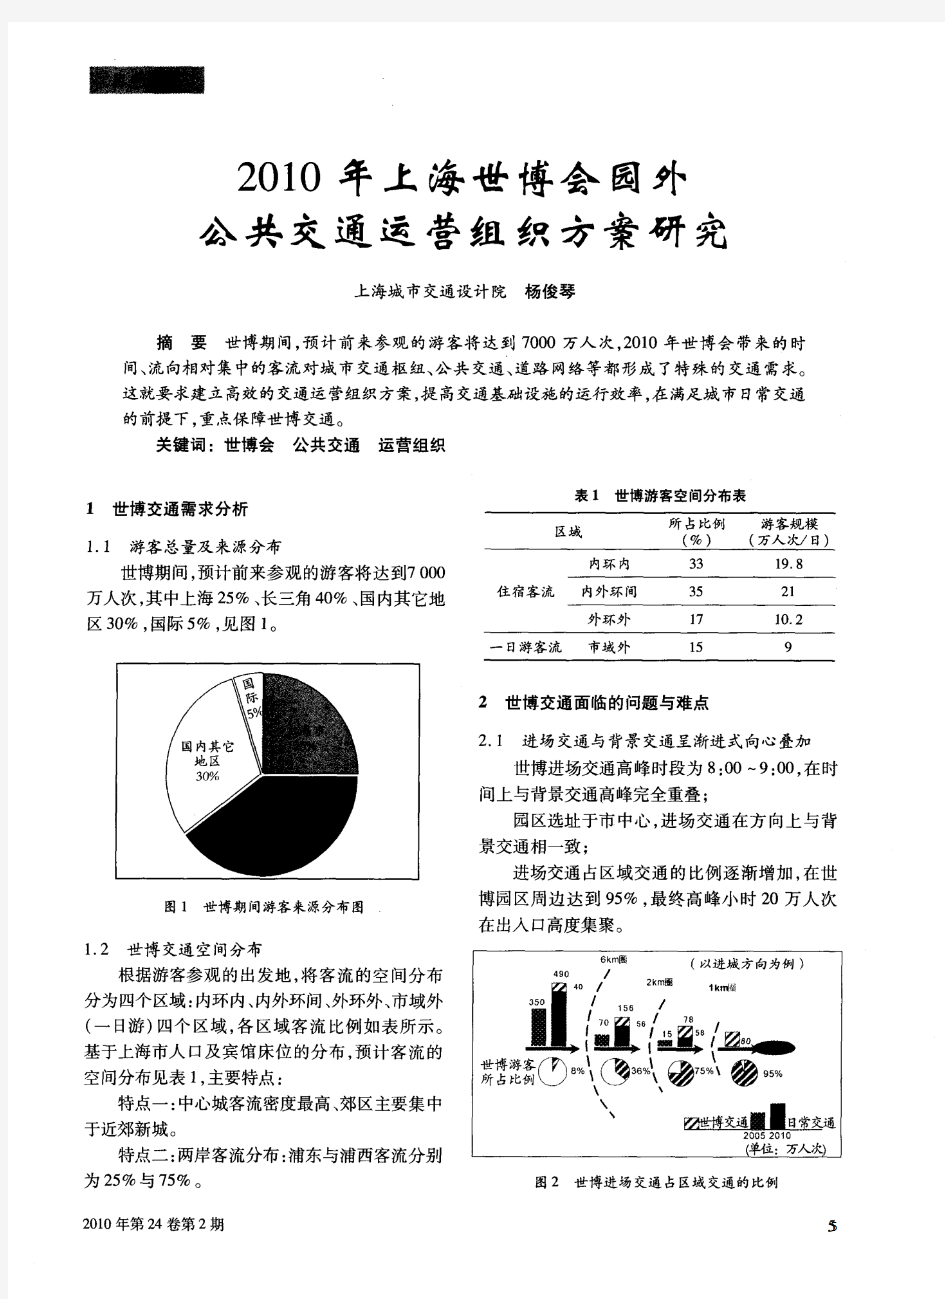 2010年上海世博会园外公共交通运营组织方案研究